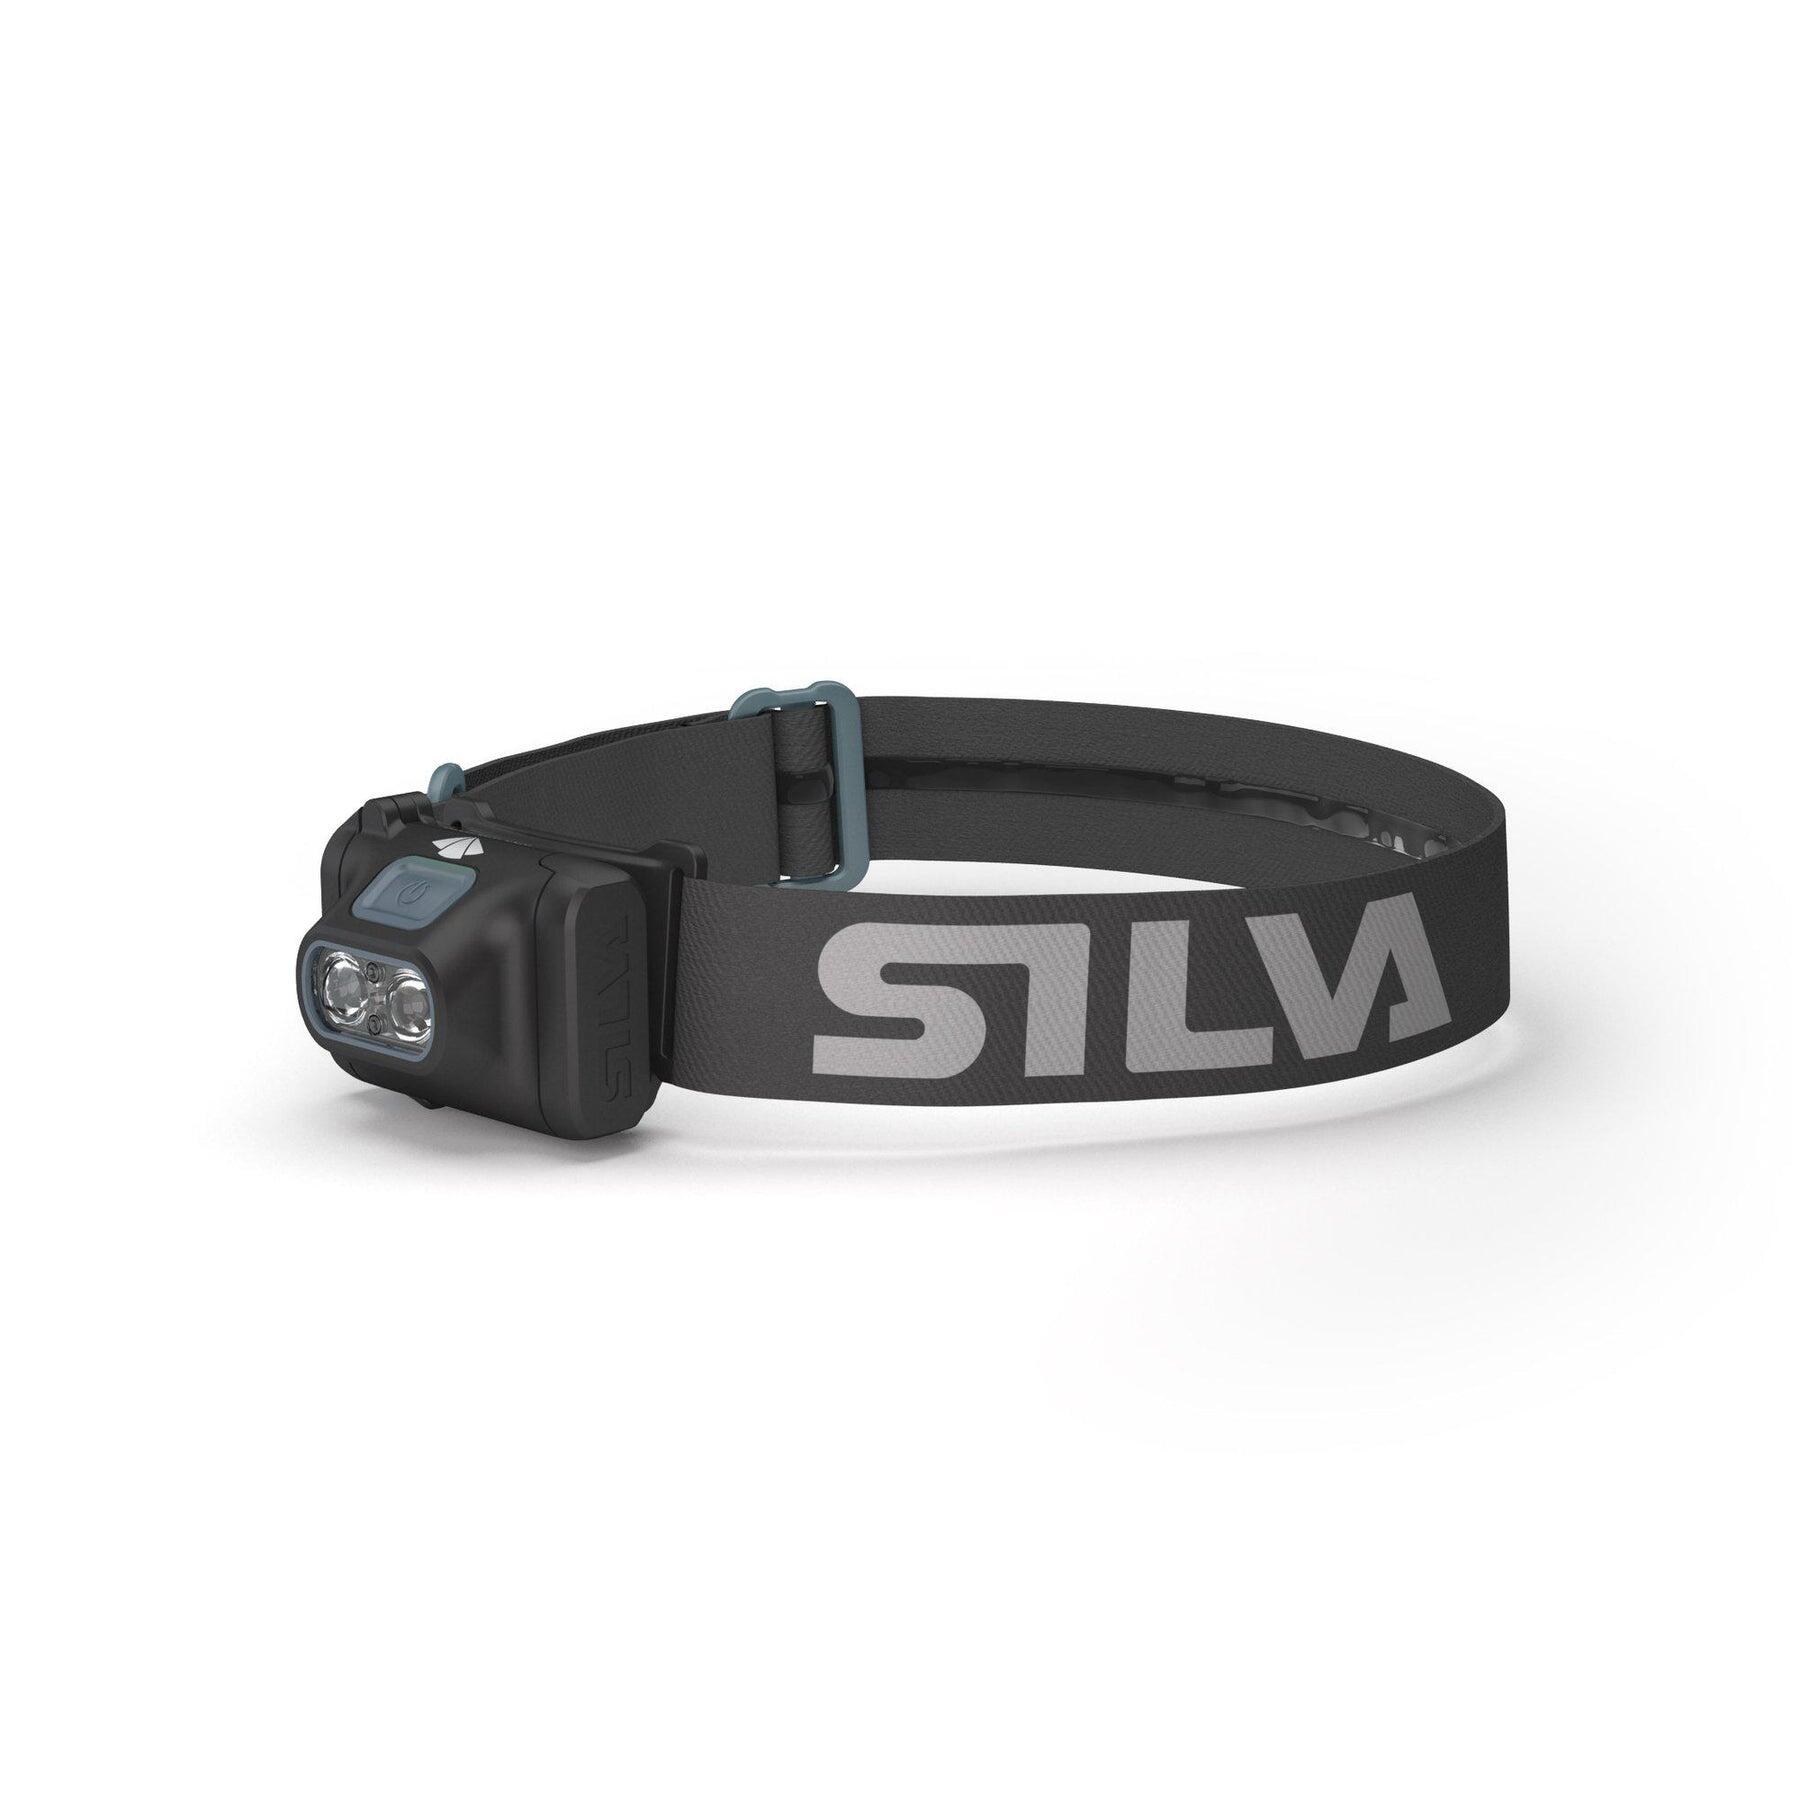 SILVA Silva Scout 3XT 350 True Lumen Headtorch Lightweight Outdoor Lighting Running